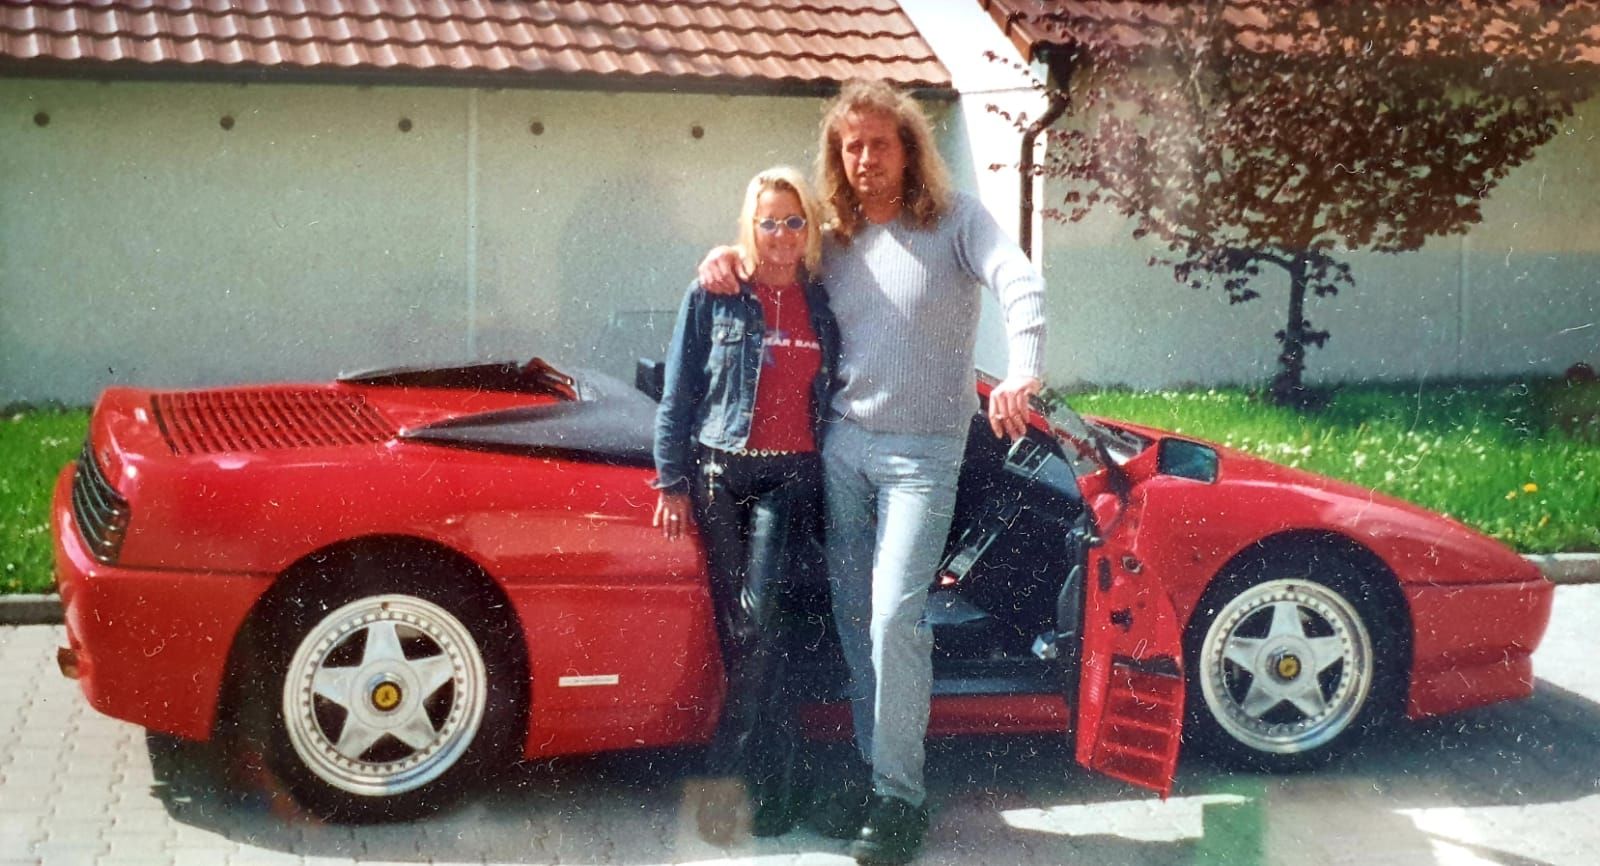 Kathrin Mermi-Schmelz und Thommy Schmelz kennen sich schon seit gut 26 Jahren. Hier ein Foto anlässlich Thommys 30. Geburtstag. Seine Partnerin hatte für ihn als Geschenk einen Ferrari ausgeliehen.